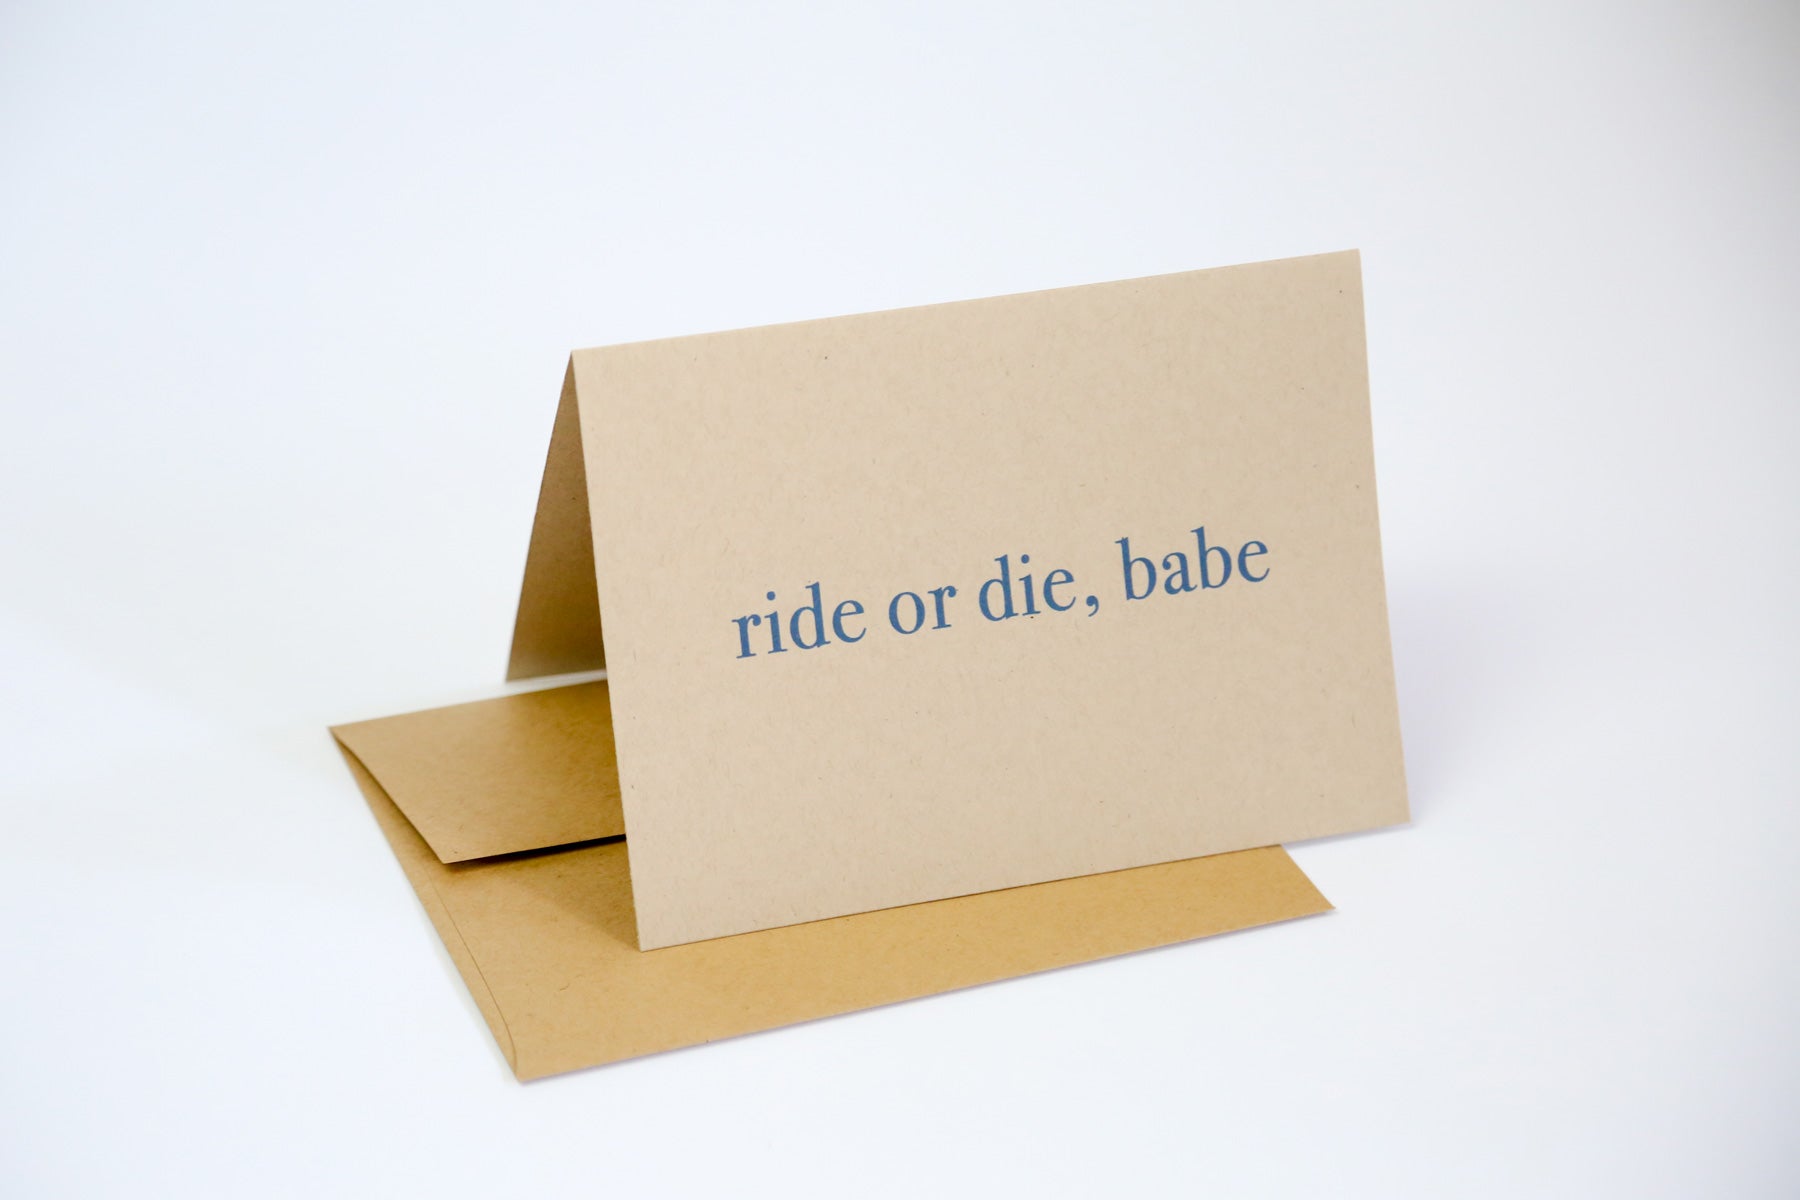 Ride or die, babe - Greeting Card